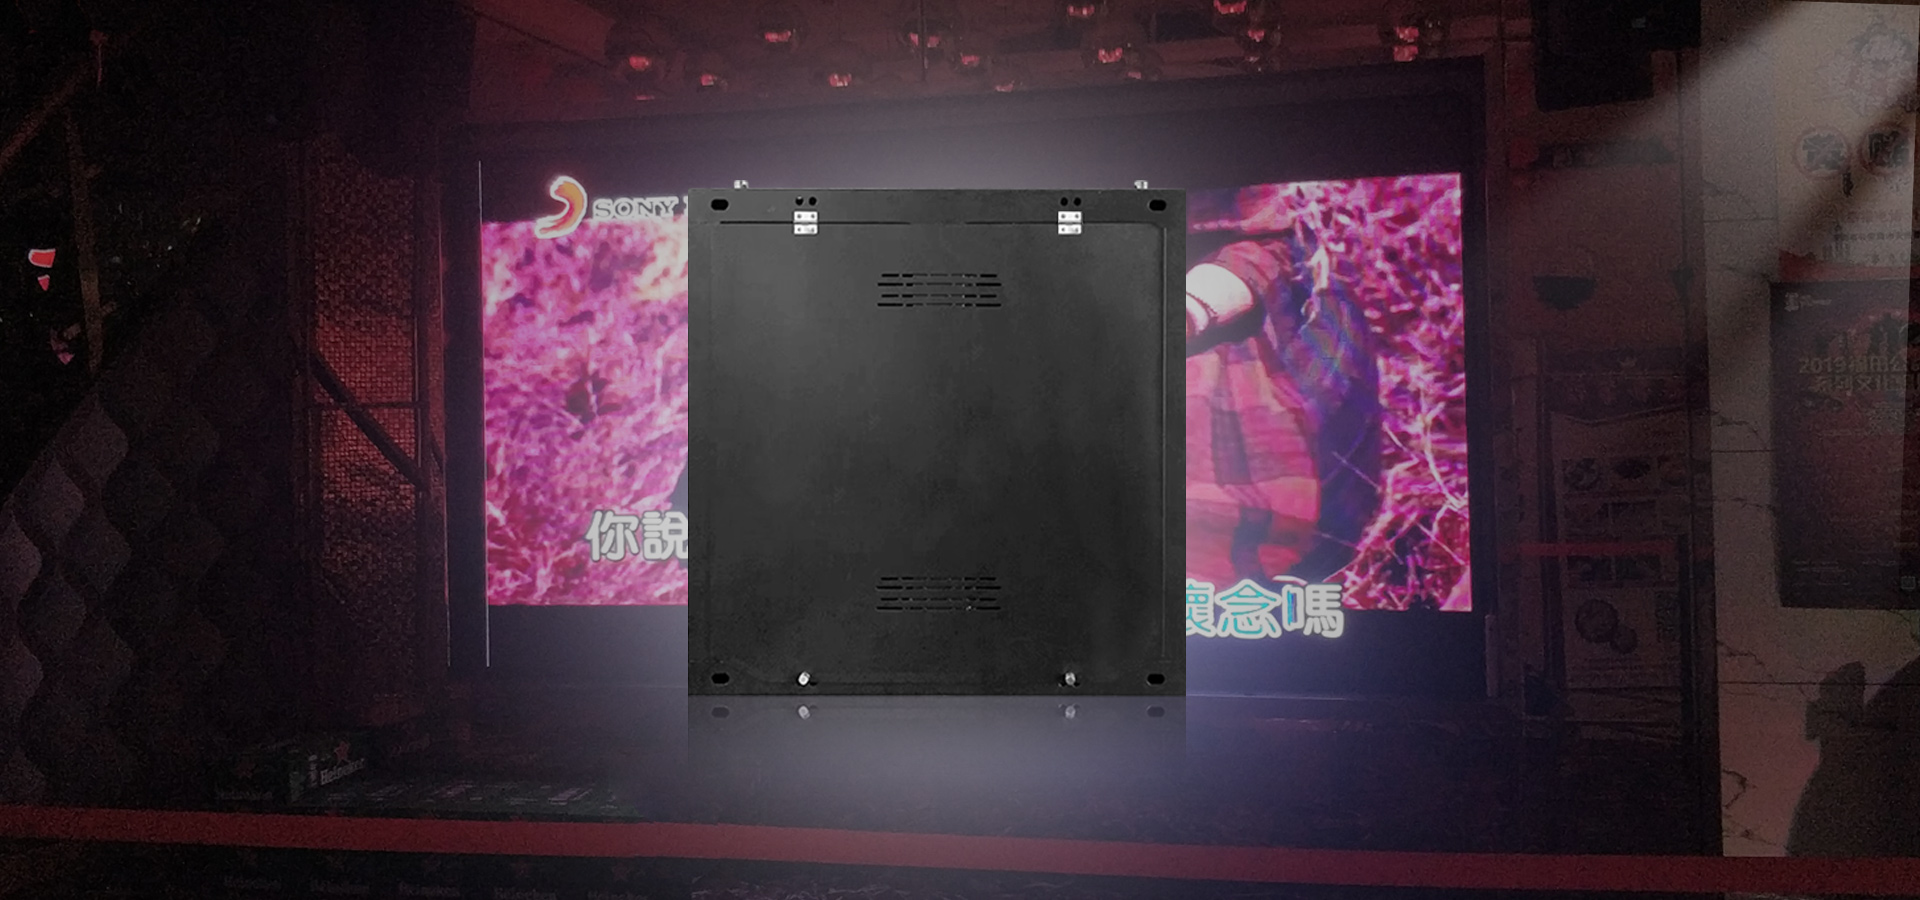 918博天堂分享LED顯示系統解決方案